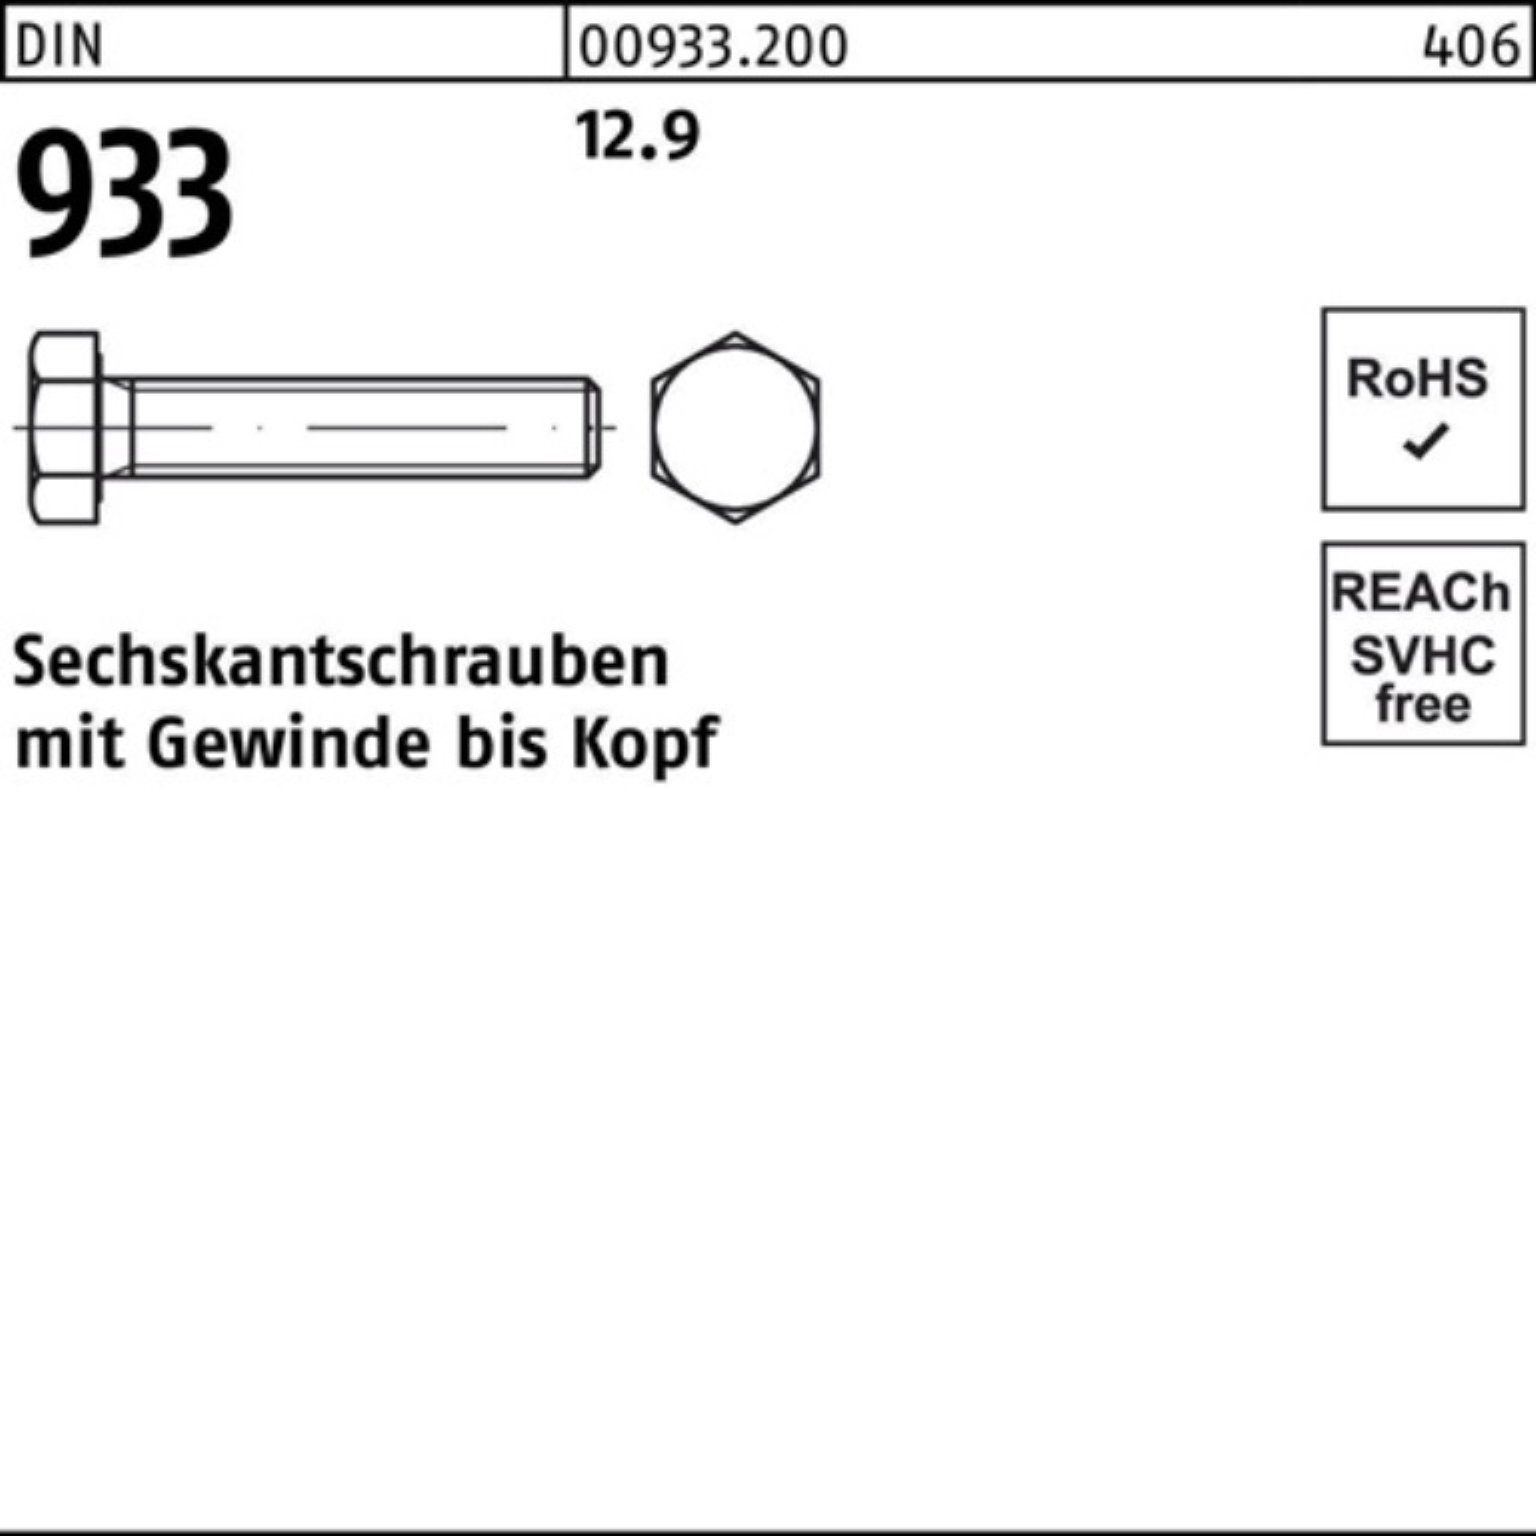 35 100 Reyher Pack Sechskantschraube VG 12.9 Sechskantschraube Stück 100er 933 M12x 93 DIN DIN